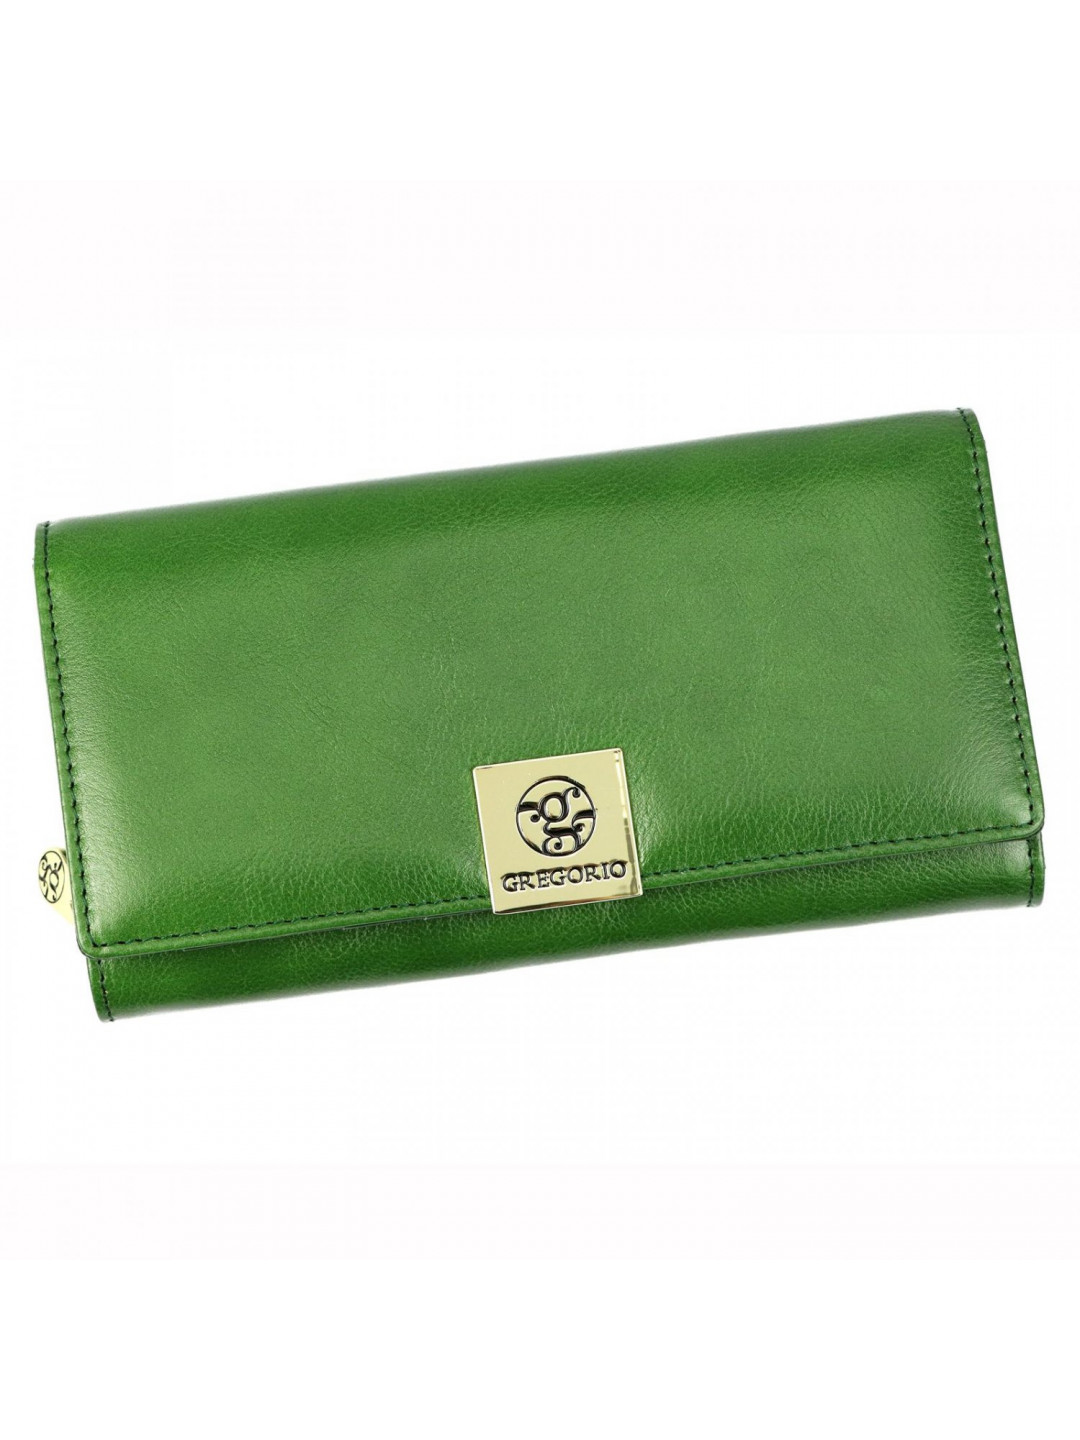 Luxusní dámská kožená peněženka Leonardo zelený